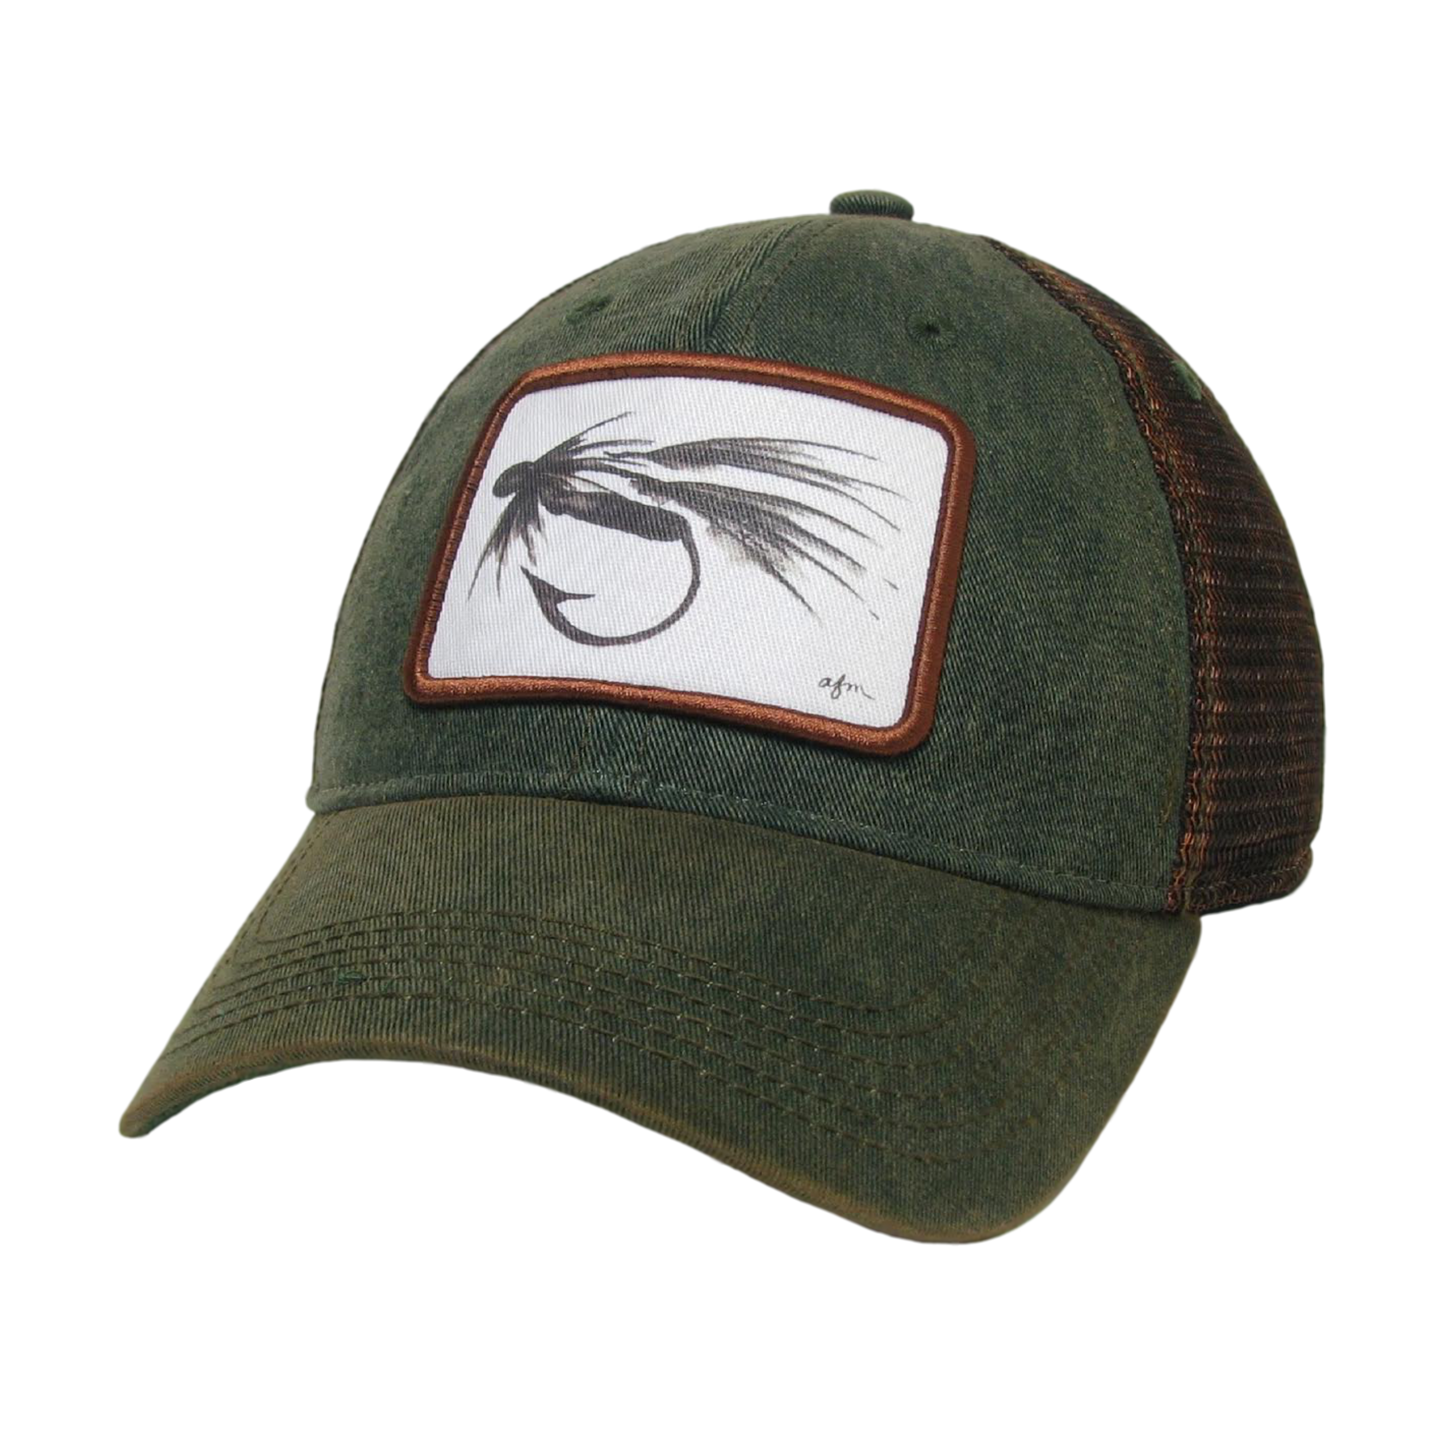 B&W Fly Old Favorite Trucker Hat in Green